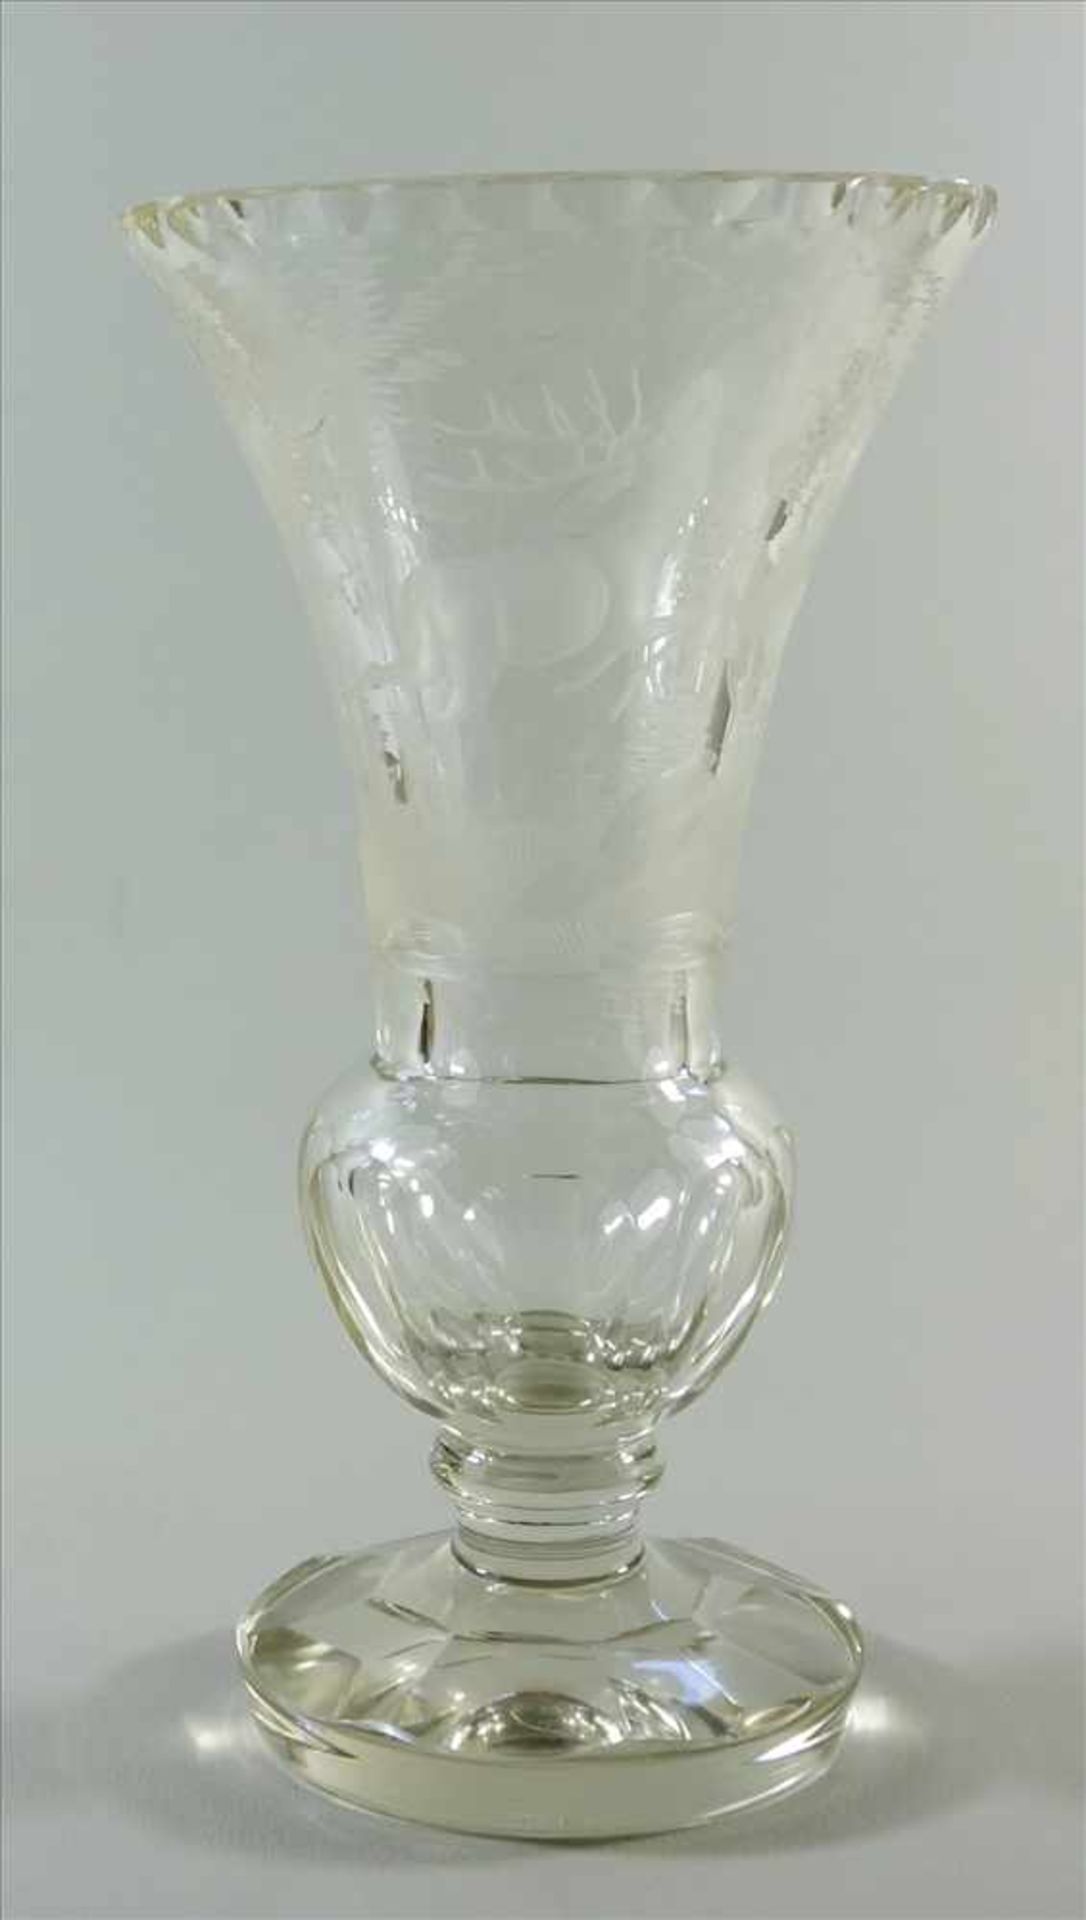 Kristallvase mit Wildmotiv, Böhmen, 1.Hälfte 20. Jh., Klarglas, im unteren Drittel verdickter Korpus